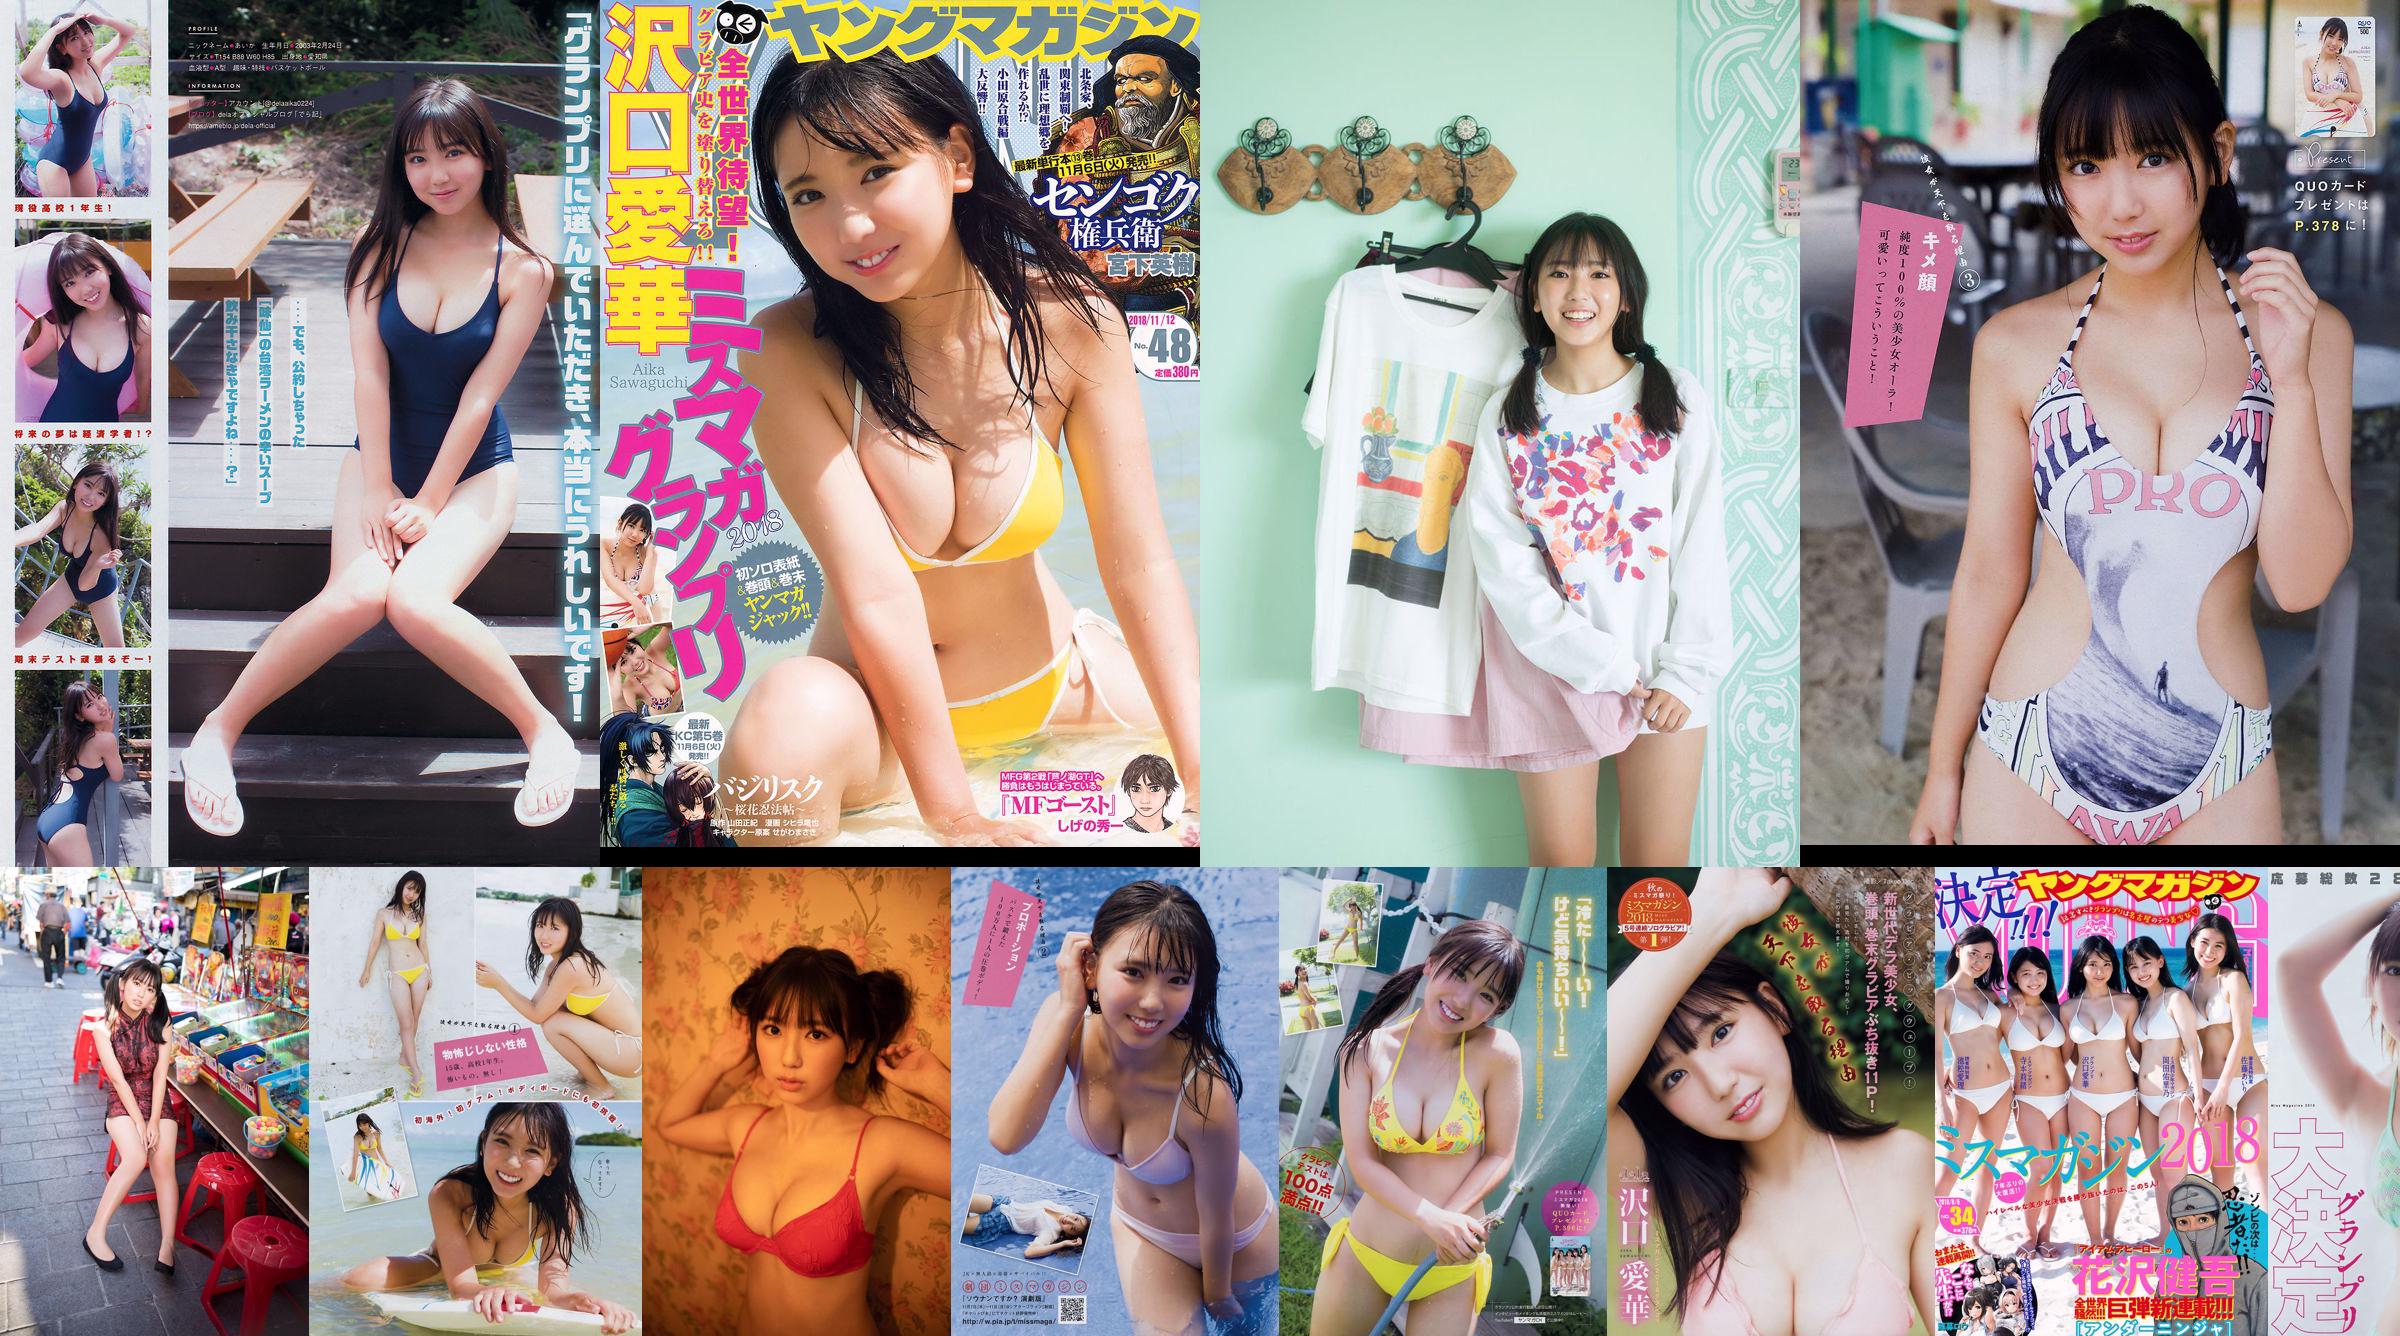 [Junges Magazin] Aika Sawaguchi No.48 Photo Magazine im Jahr 2018 No.b279cc Seite 1